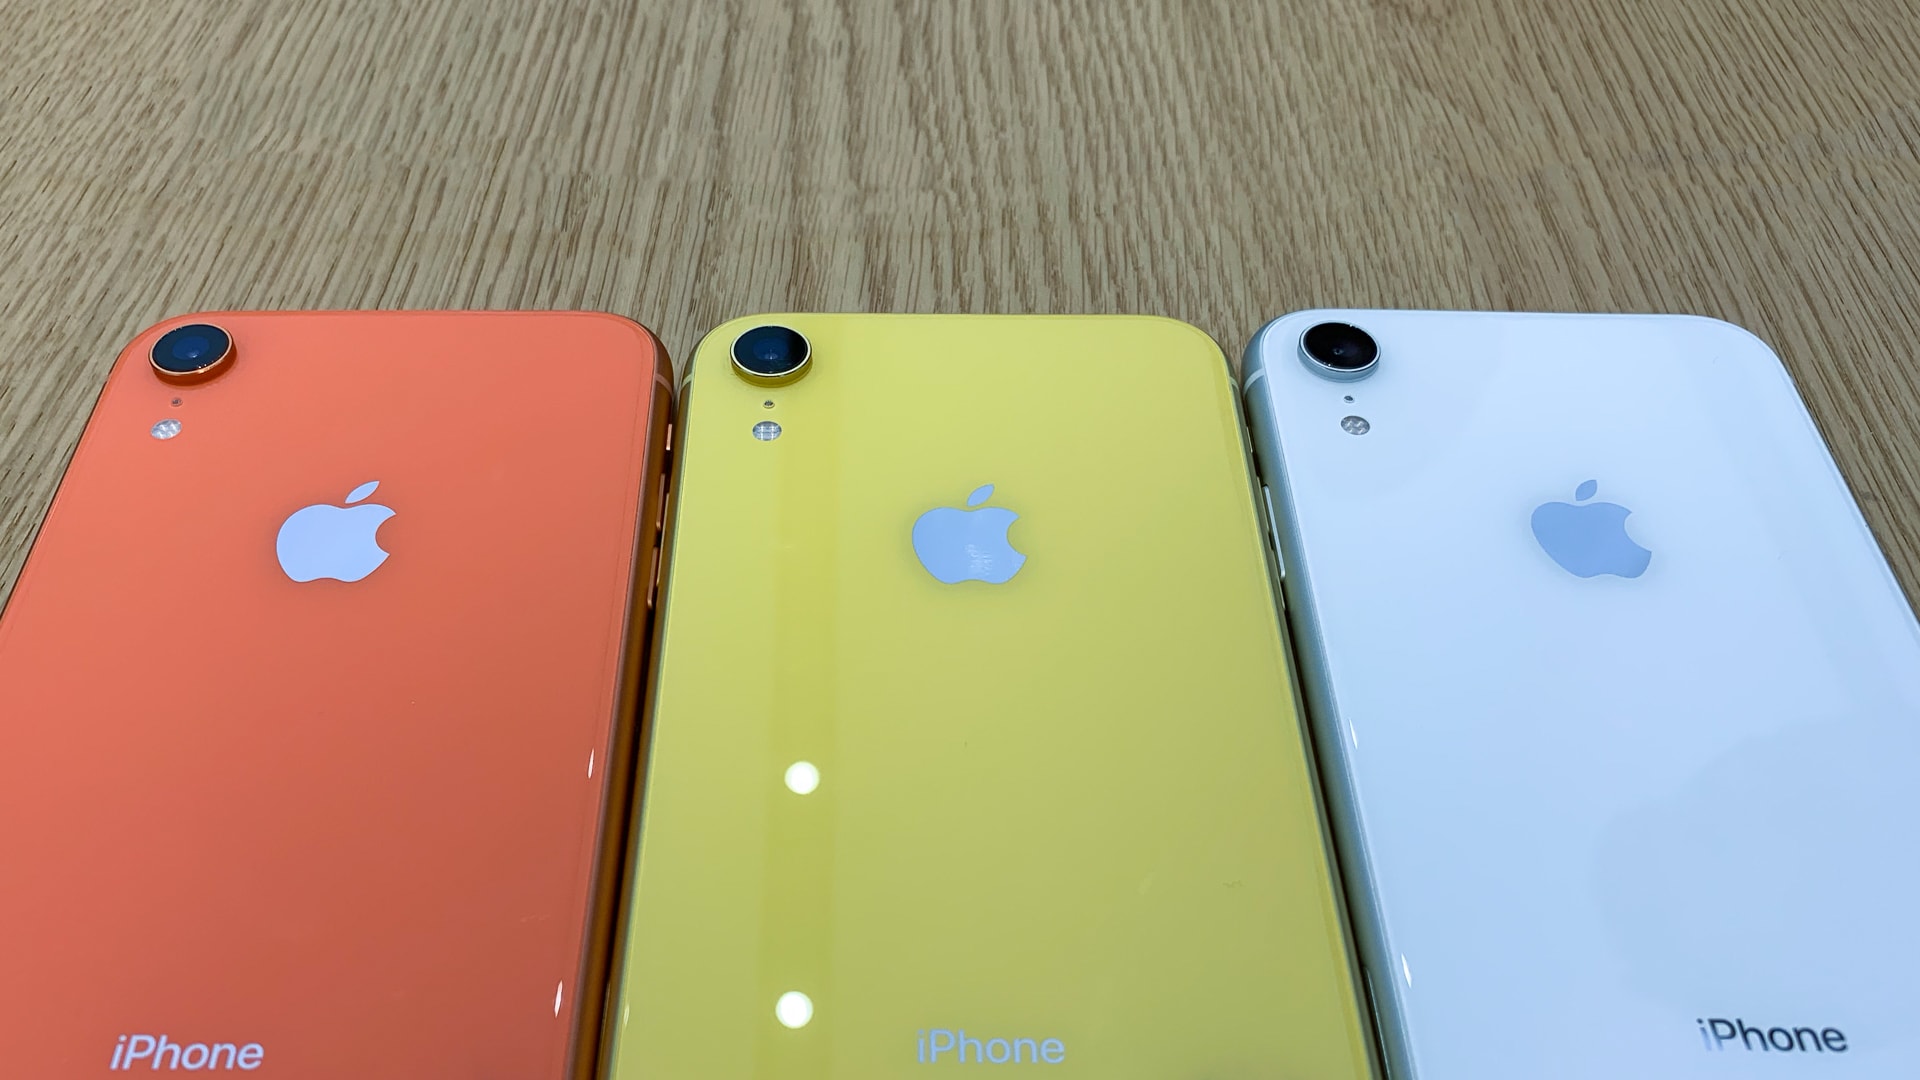 iPhone XR in Koralle, Gelb und Weiß, Hack4Life, Review, Fabian Geissler, online, Apple